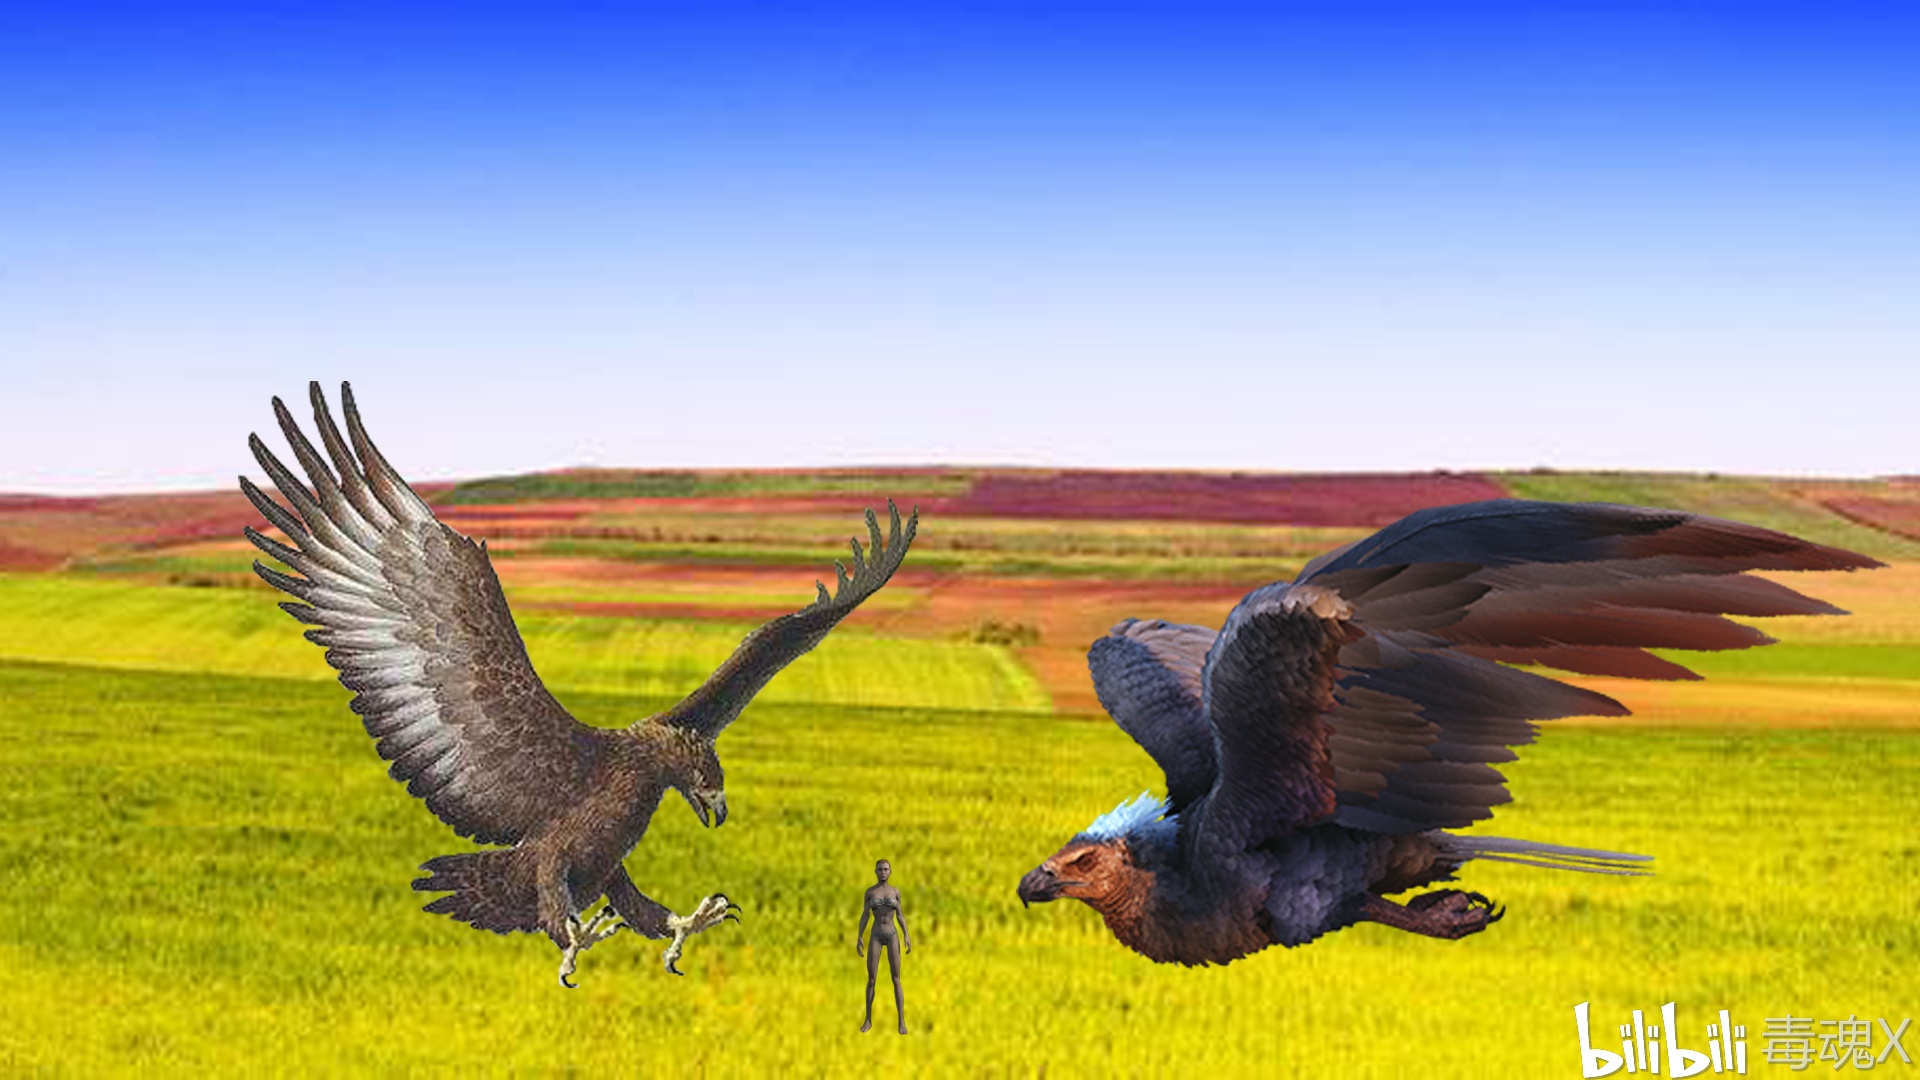 方舟生存进化原版生物重置：阿根廷巨鹰！ - 哔哩哔哩